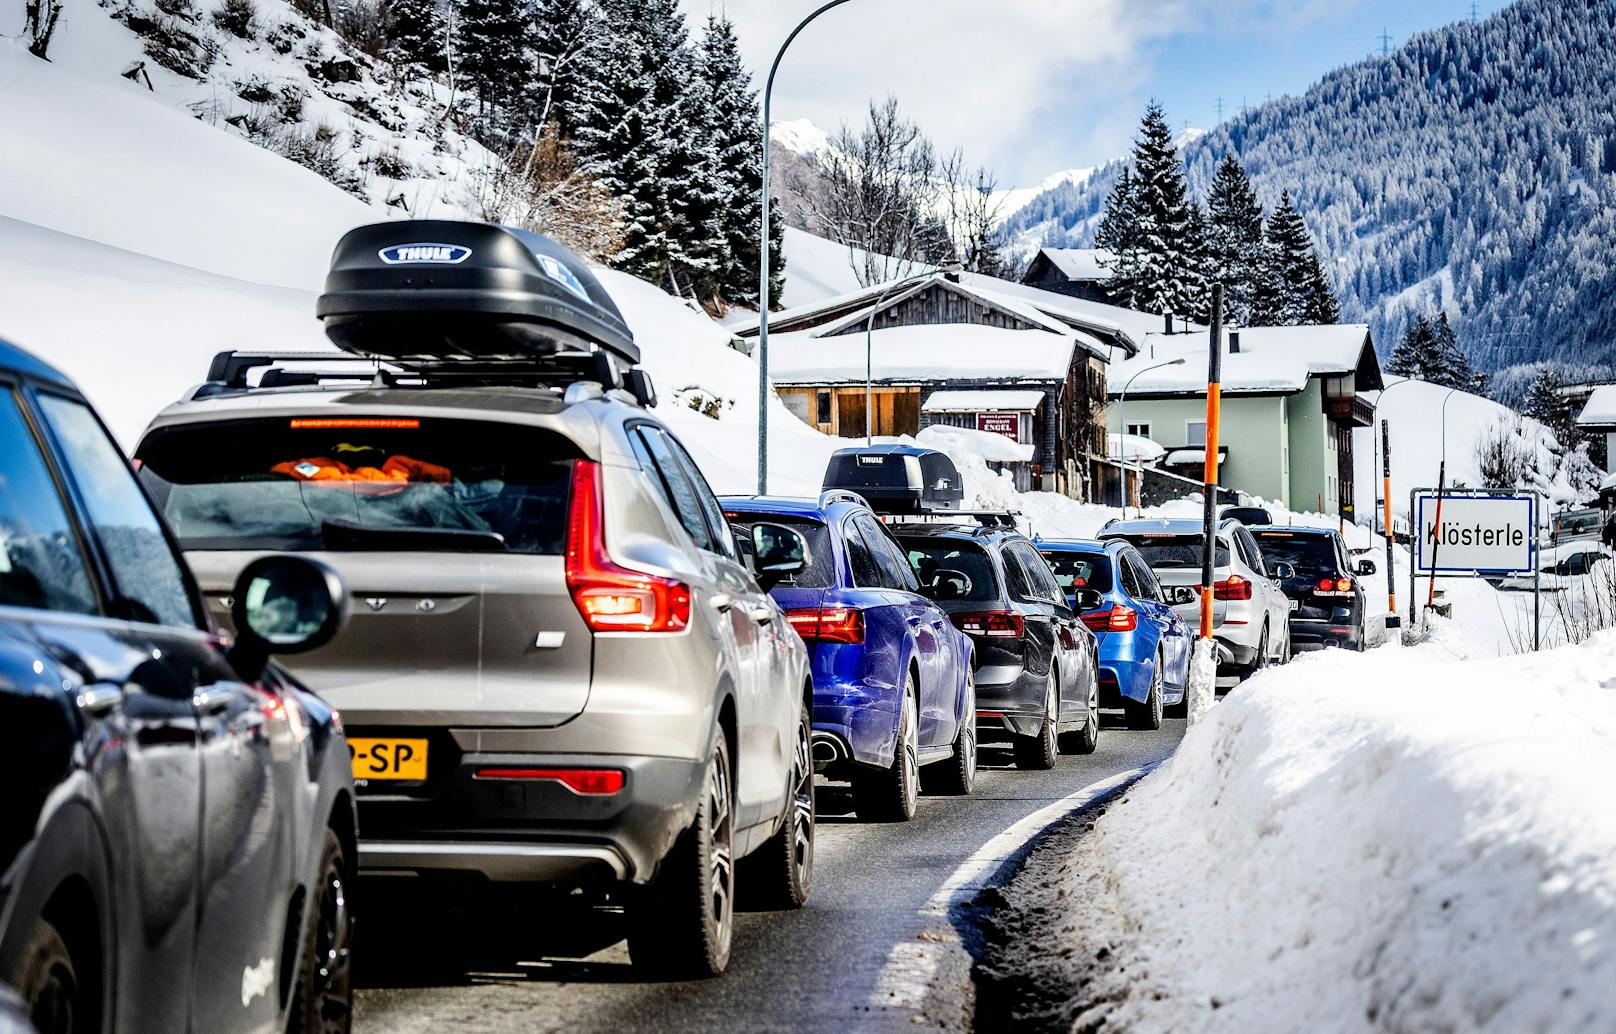 Falschmeldungen über schlimme Strafen für falsch verstaute Skis ängstigen derzeit Österreich-Urlauber.